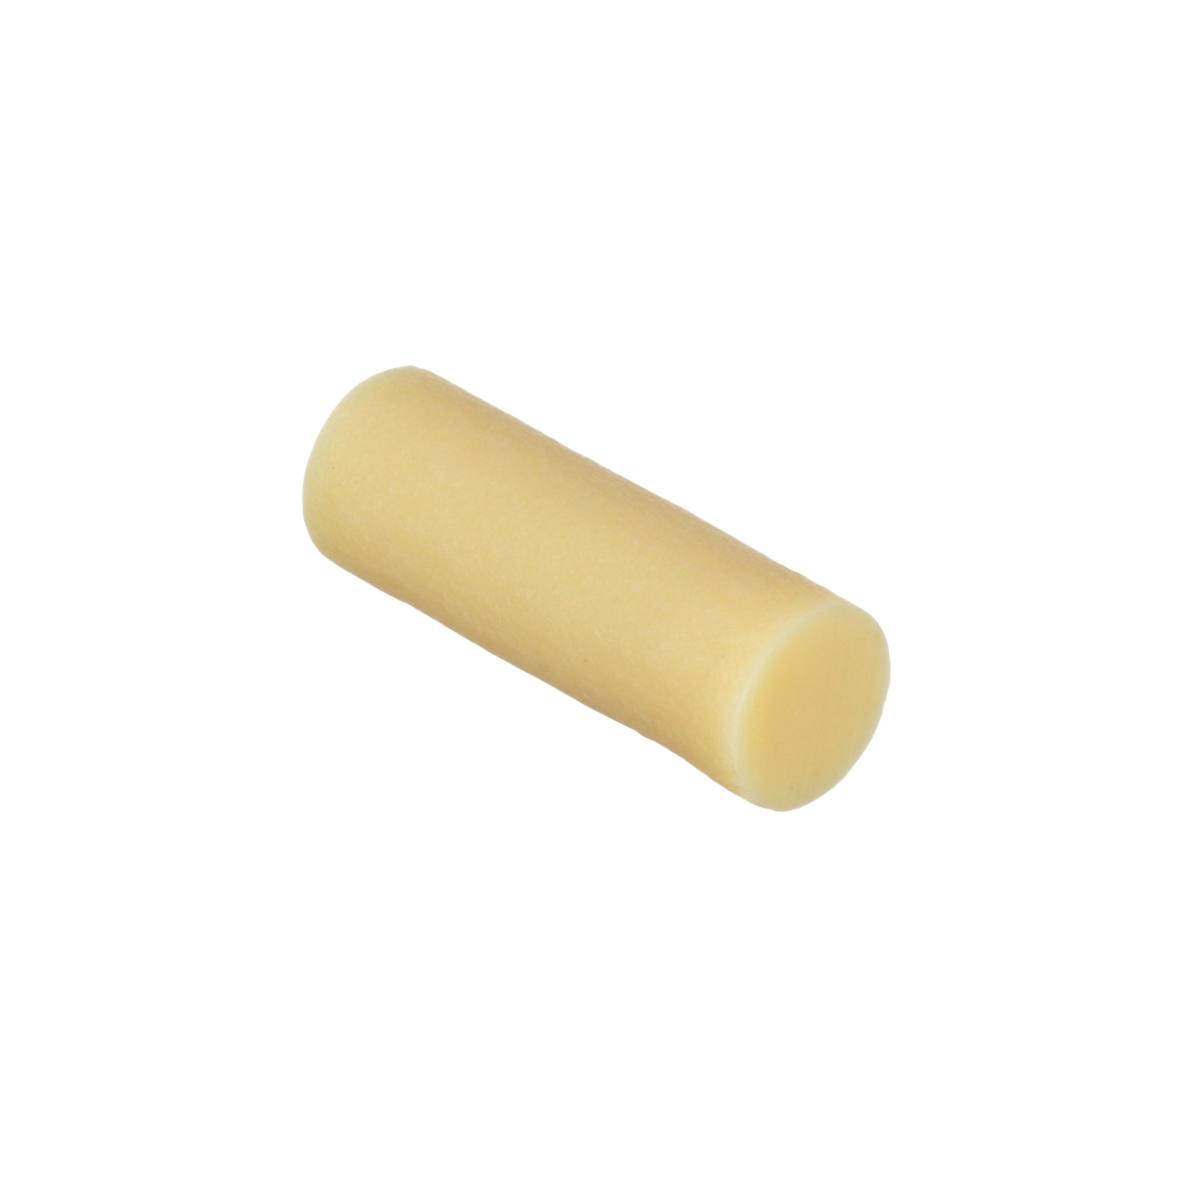 3M Scotch-Weld adhésif thermofusible à base de polyamide 3779 TC, or-jaune, 15,8 mm x 50 mm, 5 kg